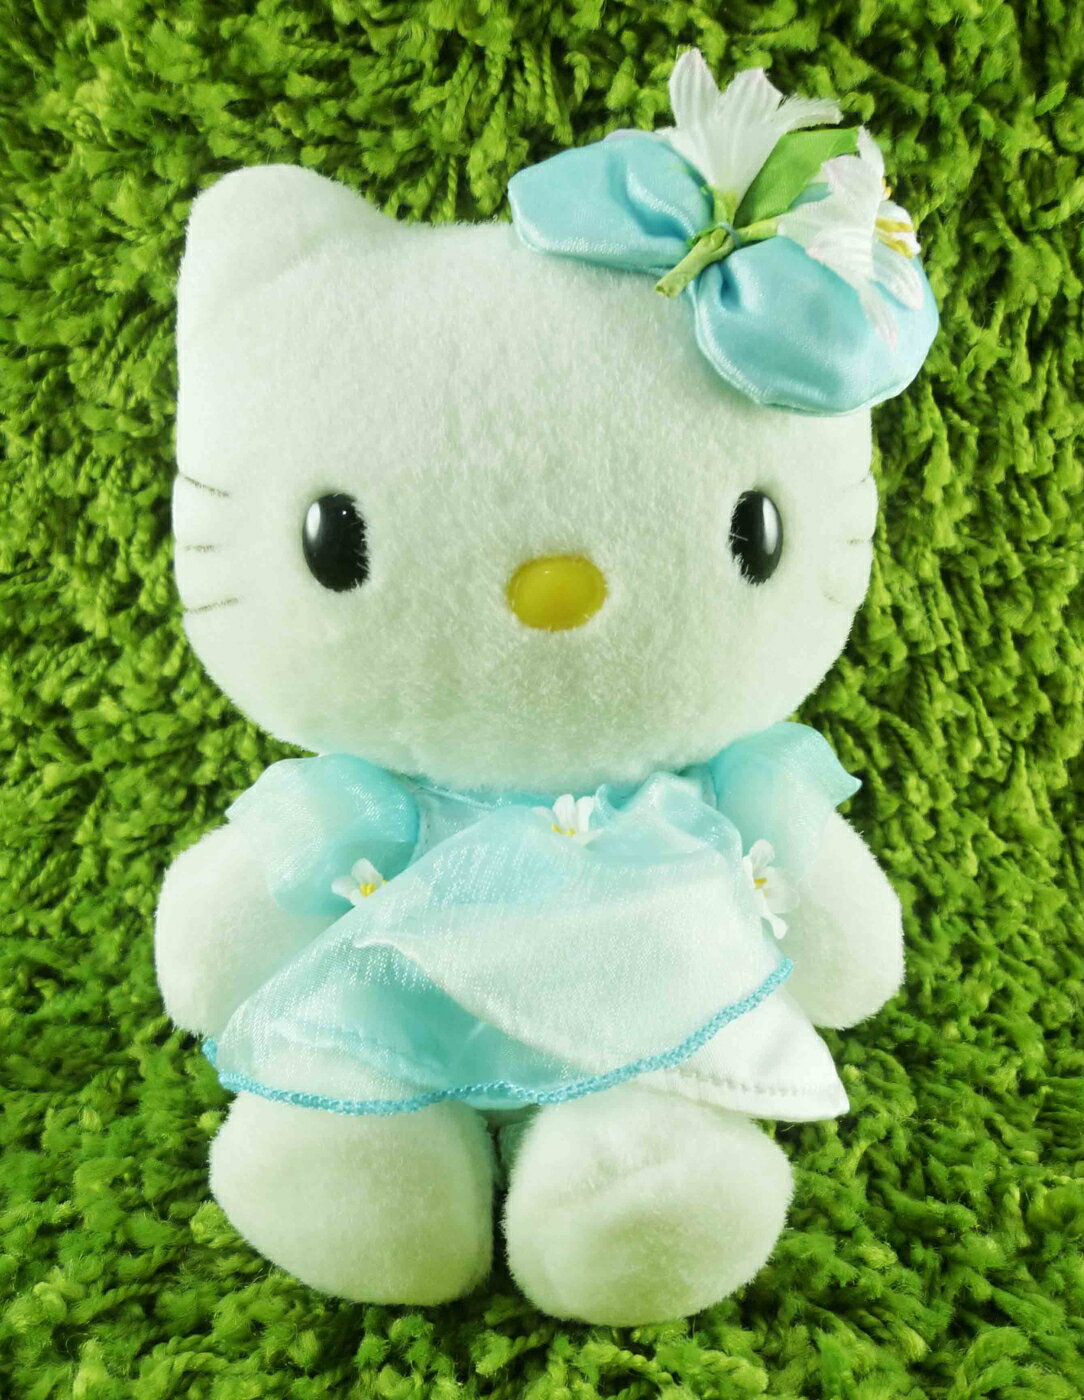 【震撼精品百貨】Hello Kitty 凱蒂貓 KITTY絨毛娃娃-百合造型-藍色 震撼日式精品百貨